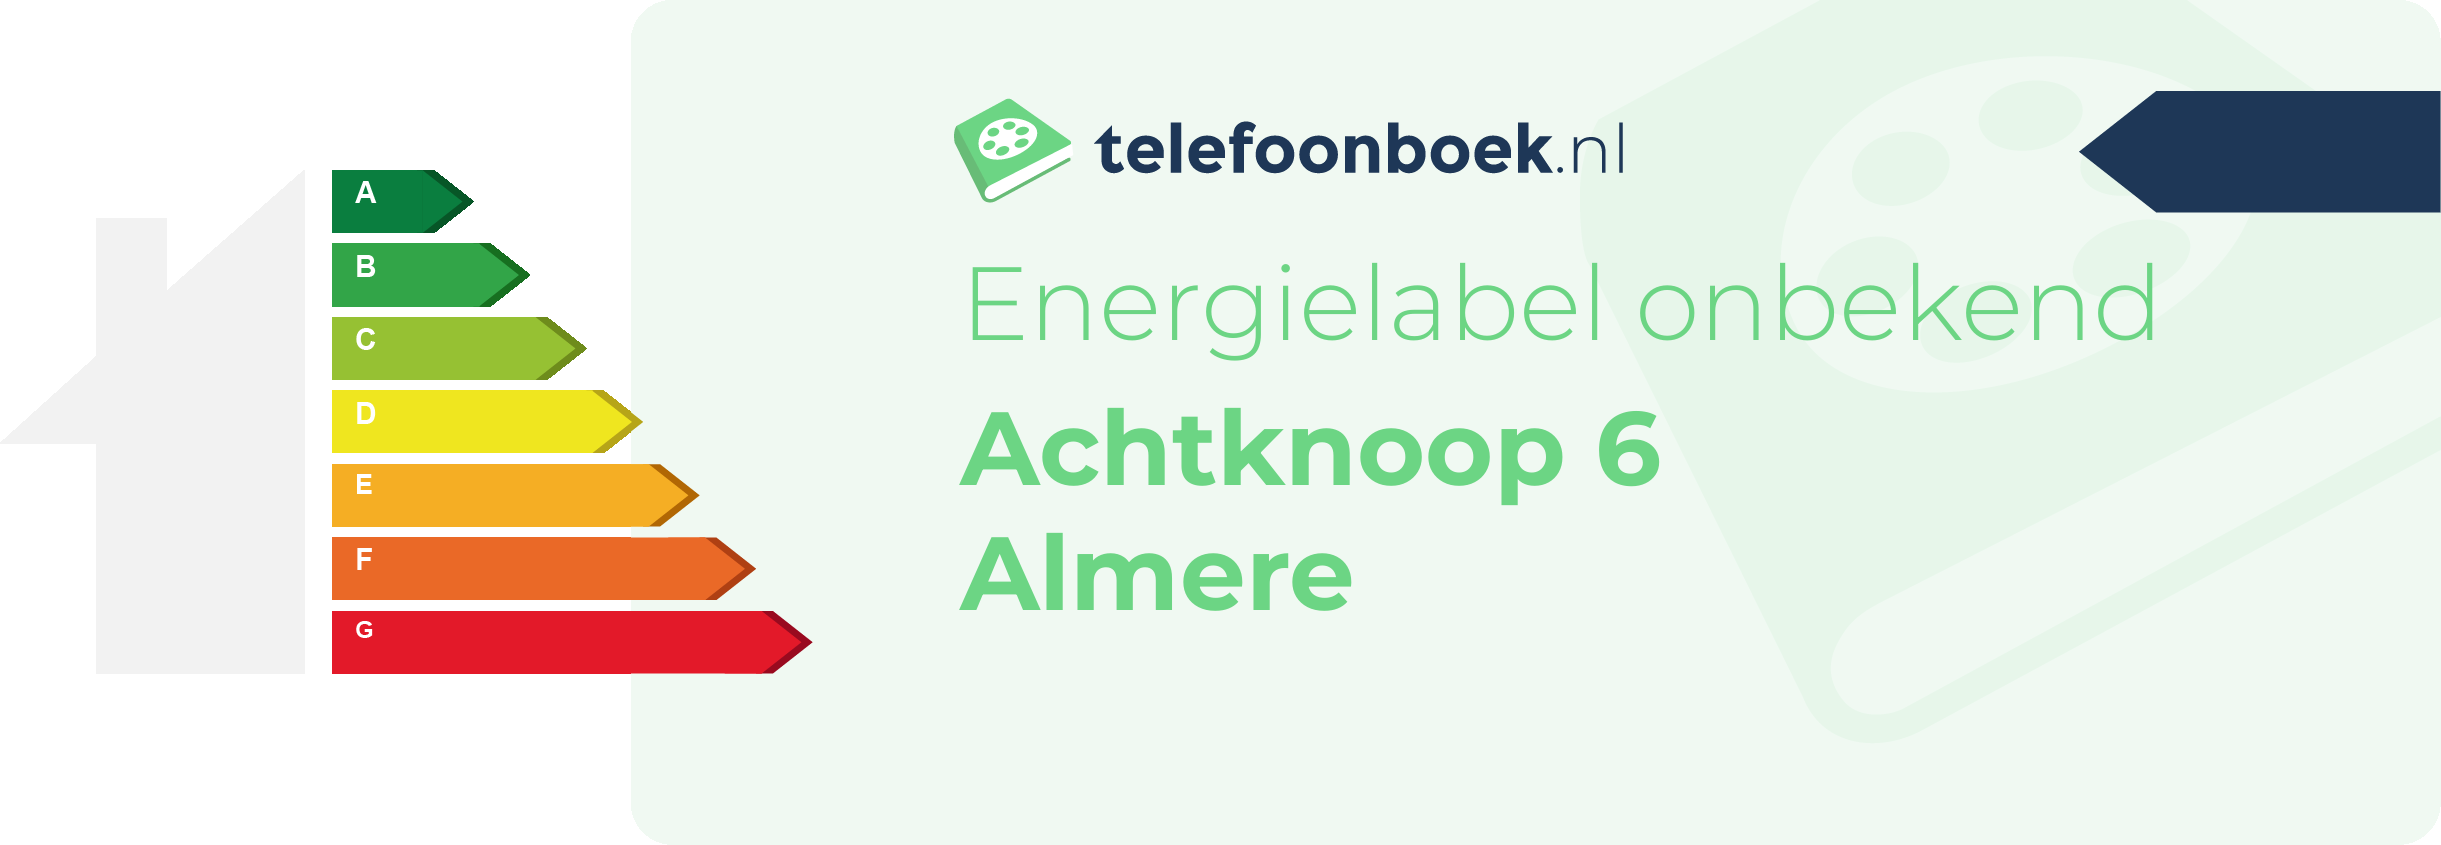 Energielabel Achtknoop 6 Almere